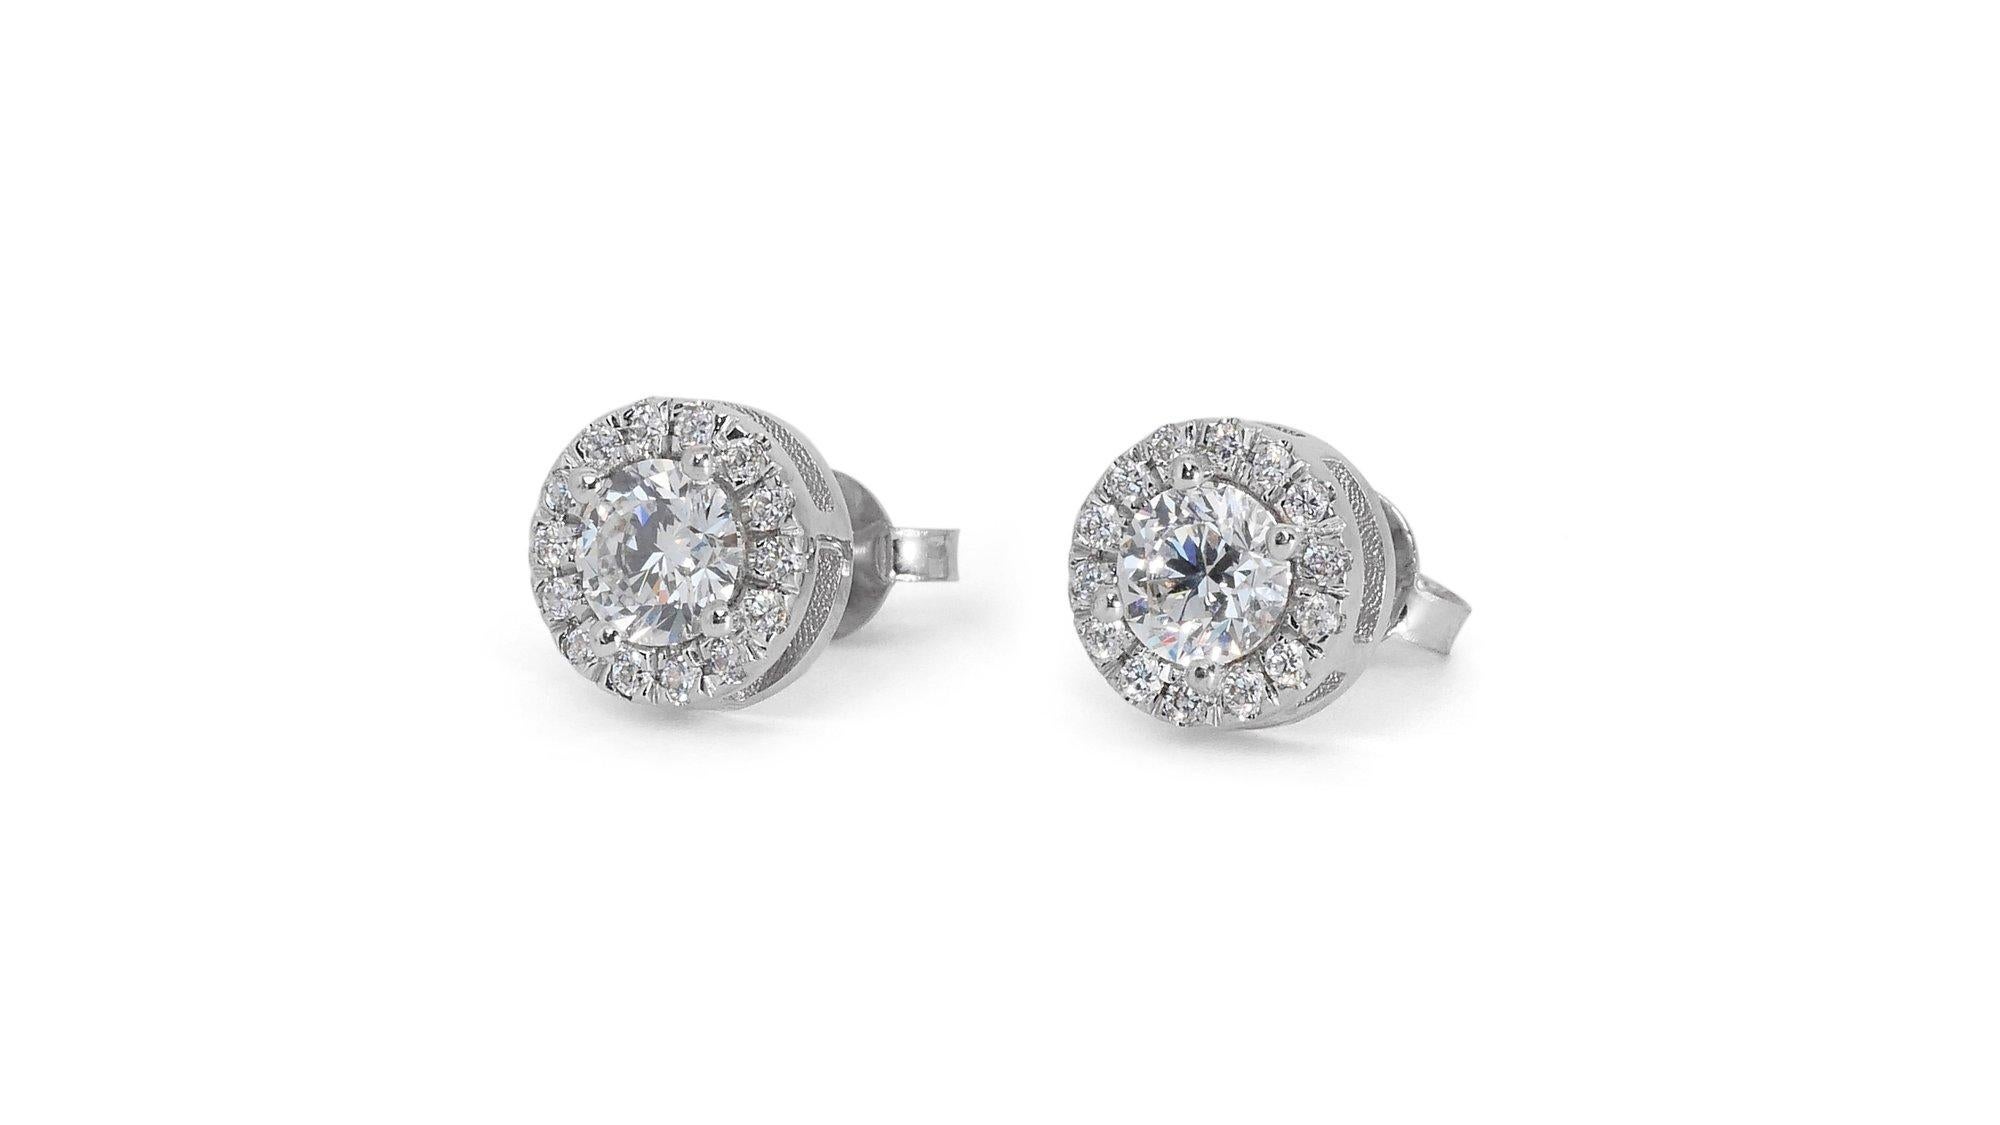 Schillernde 1,65ct Diamant-Halo-Ohrstecker in 18k Weißgold - GIA zertifiziert

Gönnen Sie sich zeitlose Eleganz mit diesen exquisiten Diamant-Halo-Ohrsteckern. Mit einem Paar faszinierender Diamanten im Rundschliff von beeindruckenden 1,40 Karat